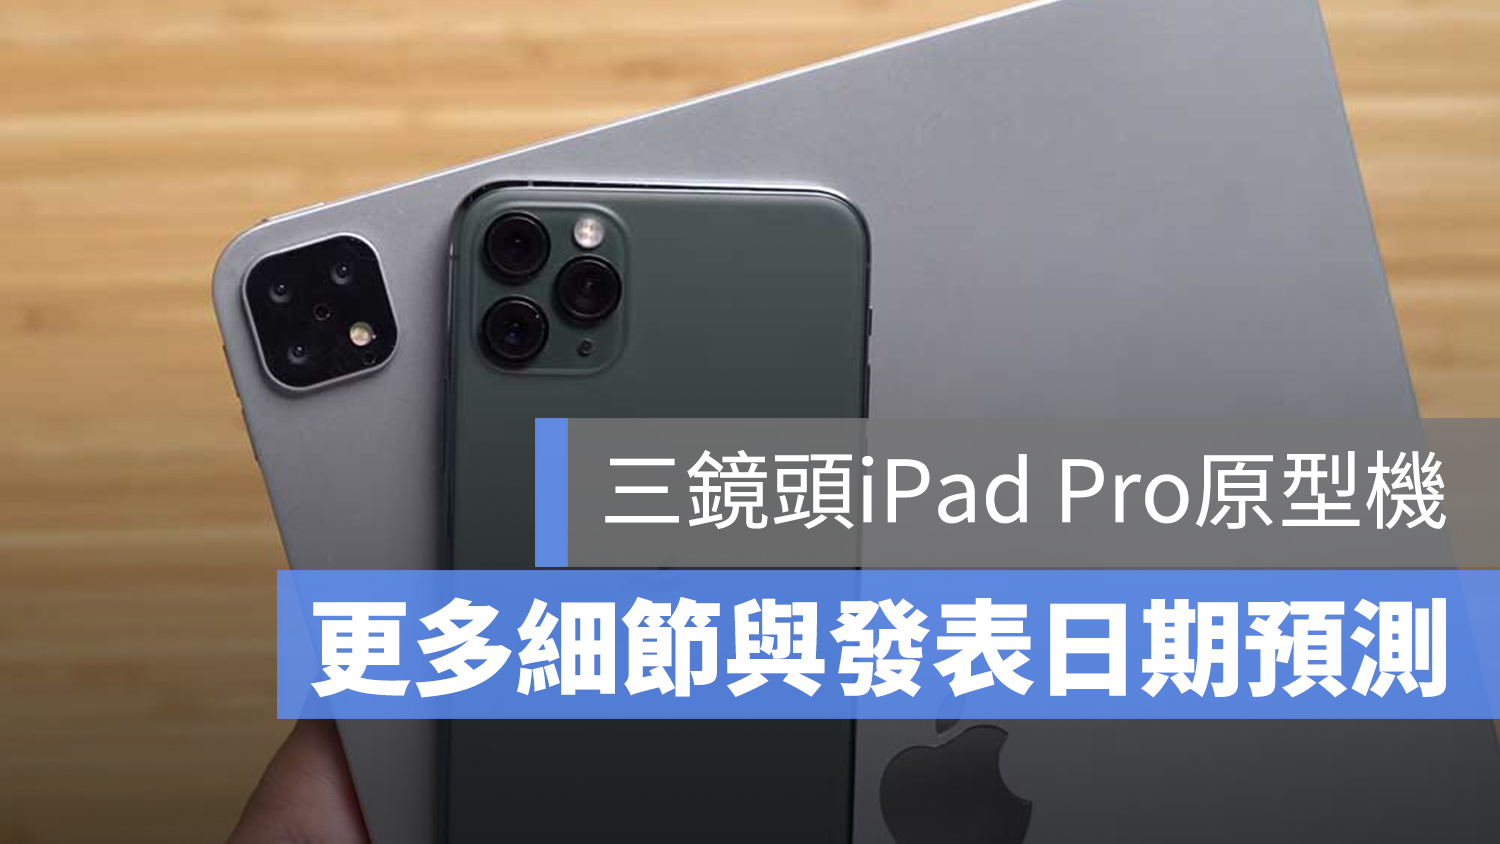 2019 iPad Pro 三鏡頭